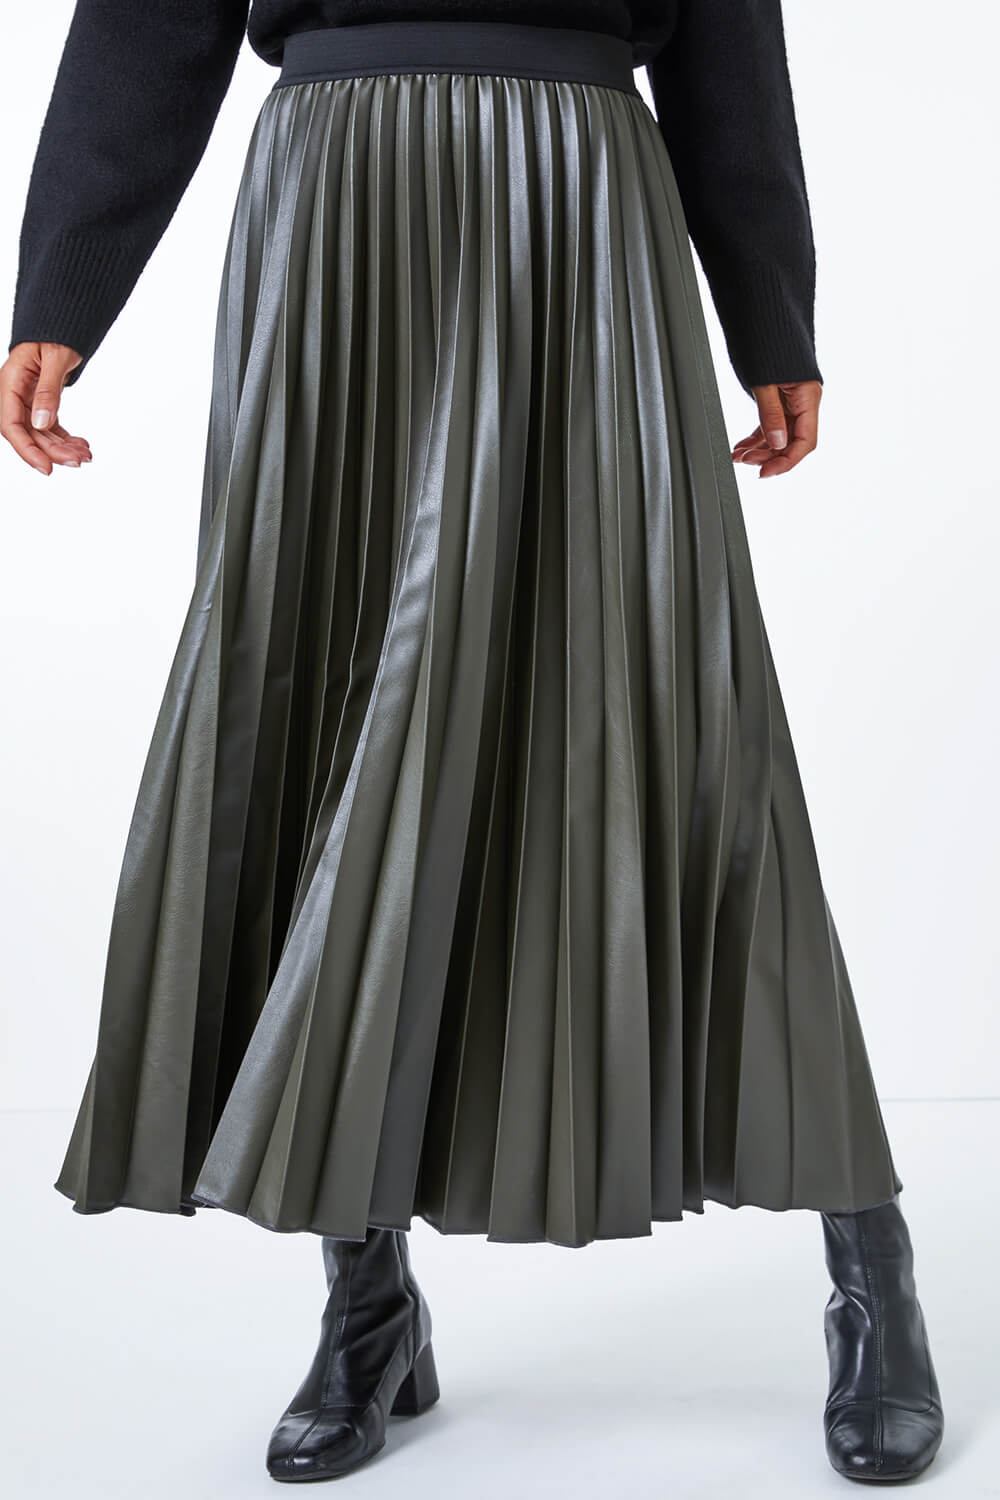 Winter Maxi Skirt  MyHCLook  By Lauren M